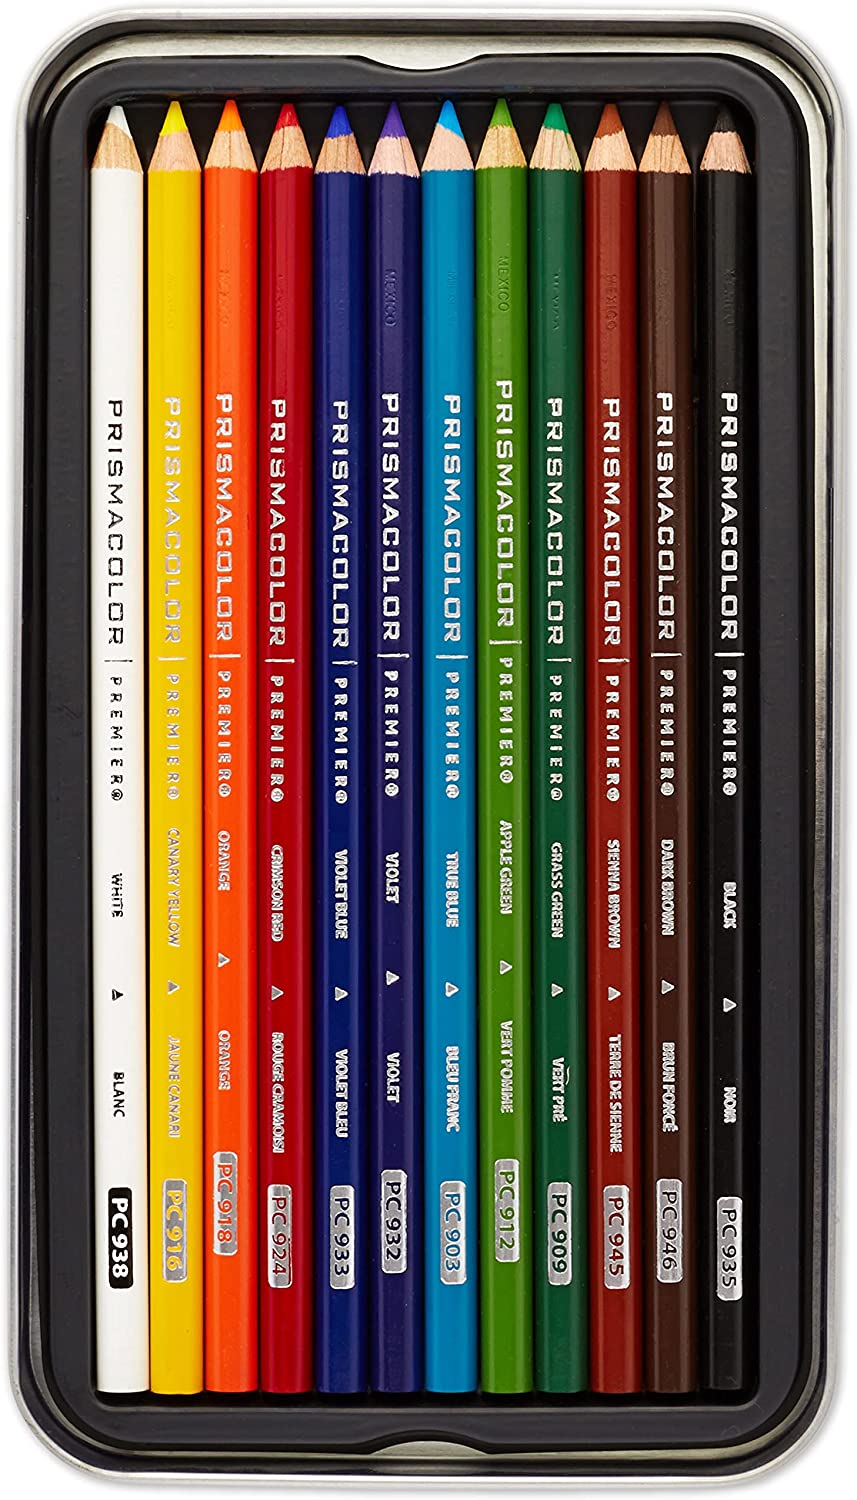 Prismacolor Premier Colored Pencils, Soft Core, 12 Count – Oil